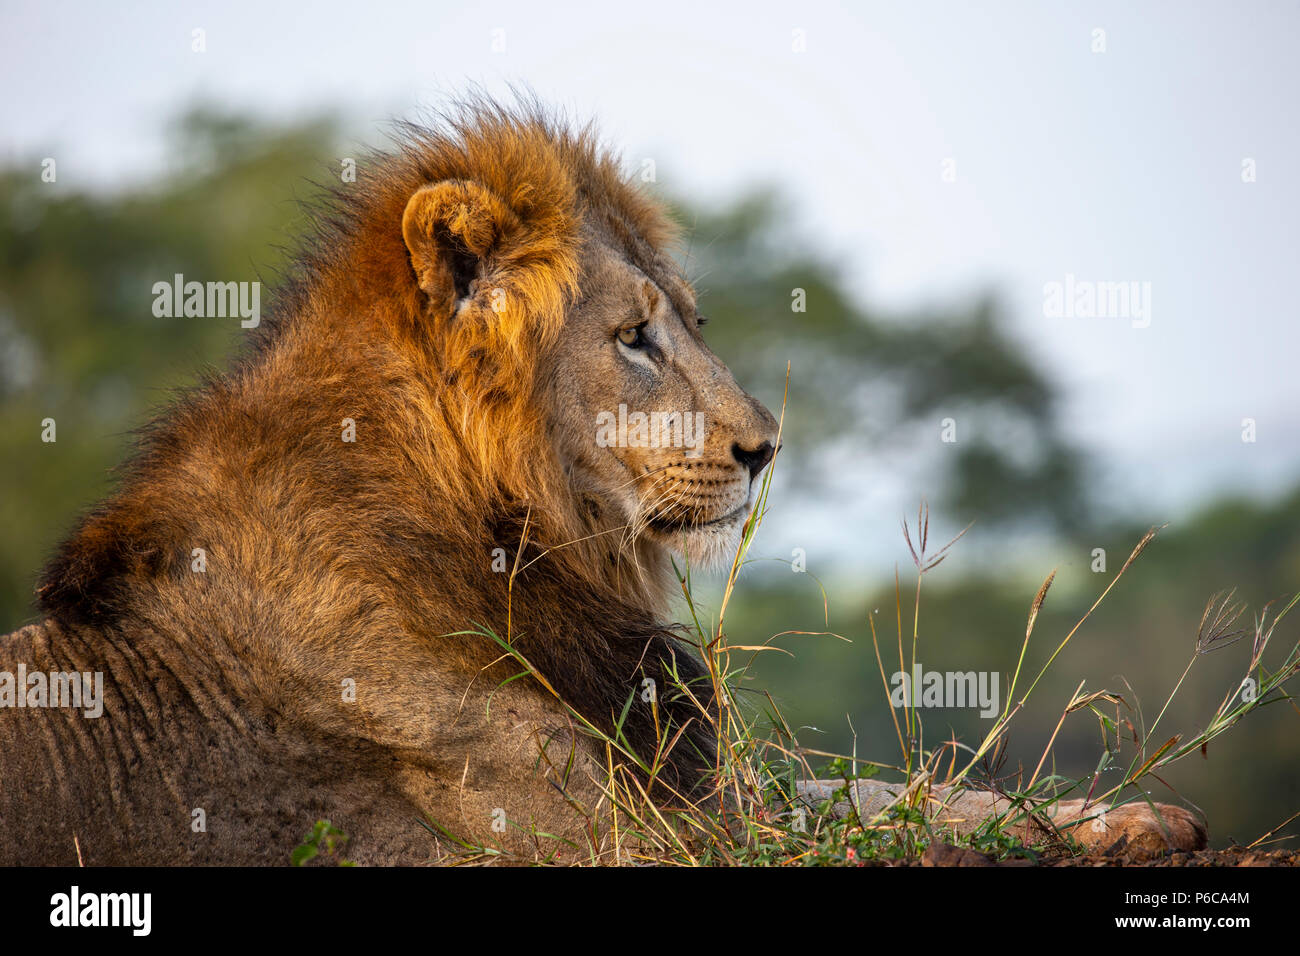 Close up headshot maschile di lion Panthera leo nella luce del sole della mattina Foto Stock